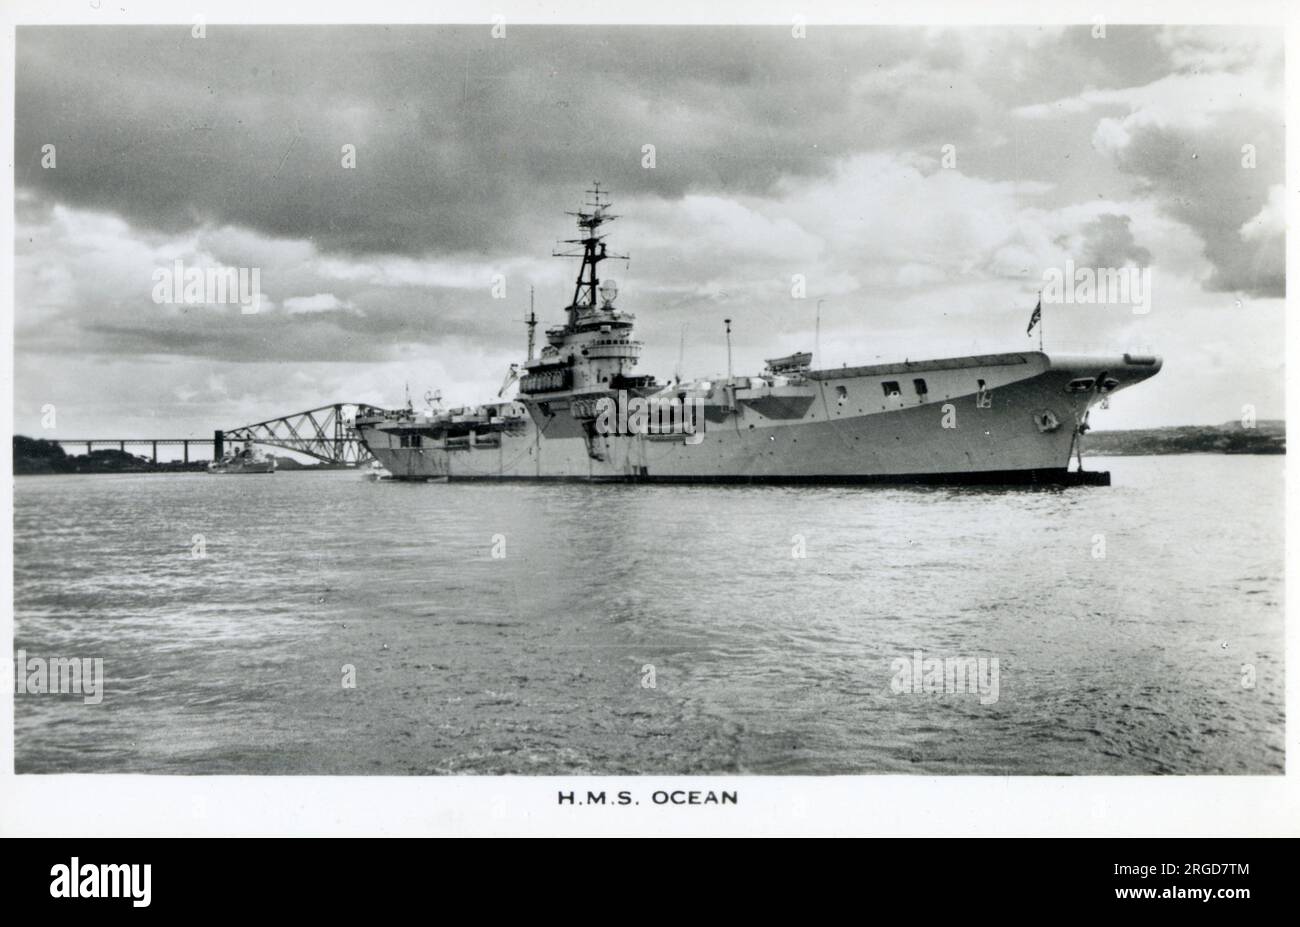 H.M.S. Ocean - portaerei della flotta leggera Colossus Class - commissionata nel 1945 - costruita a Glasgow da Alexander Stephen & Sons. Foto Stock